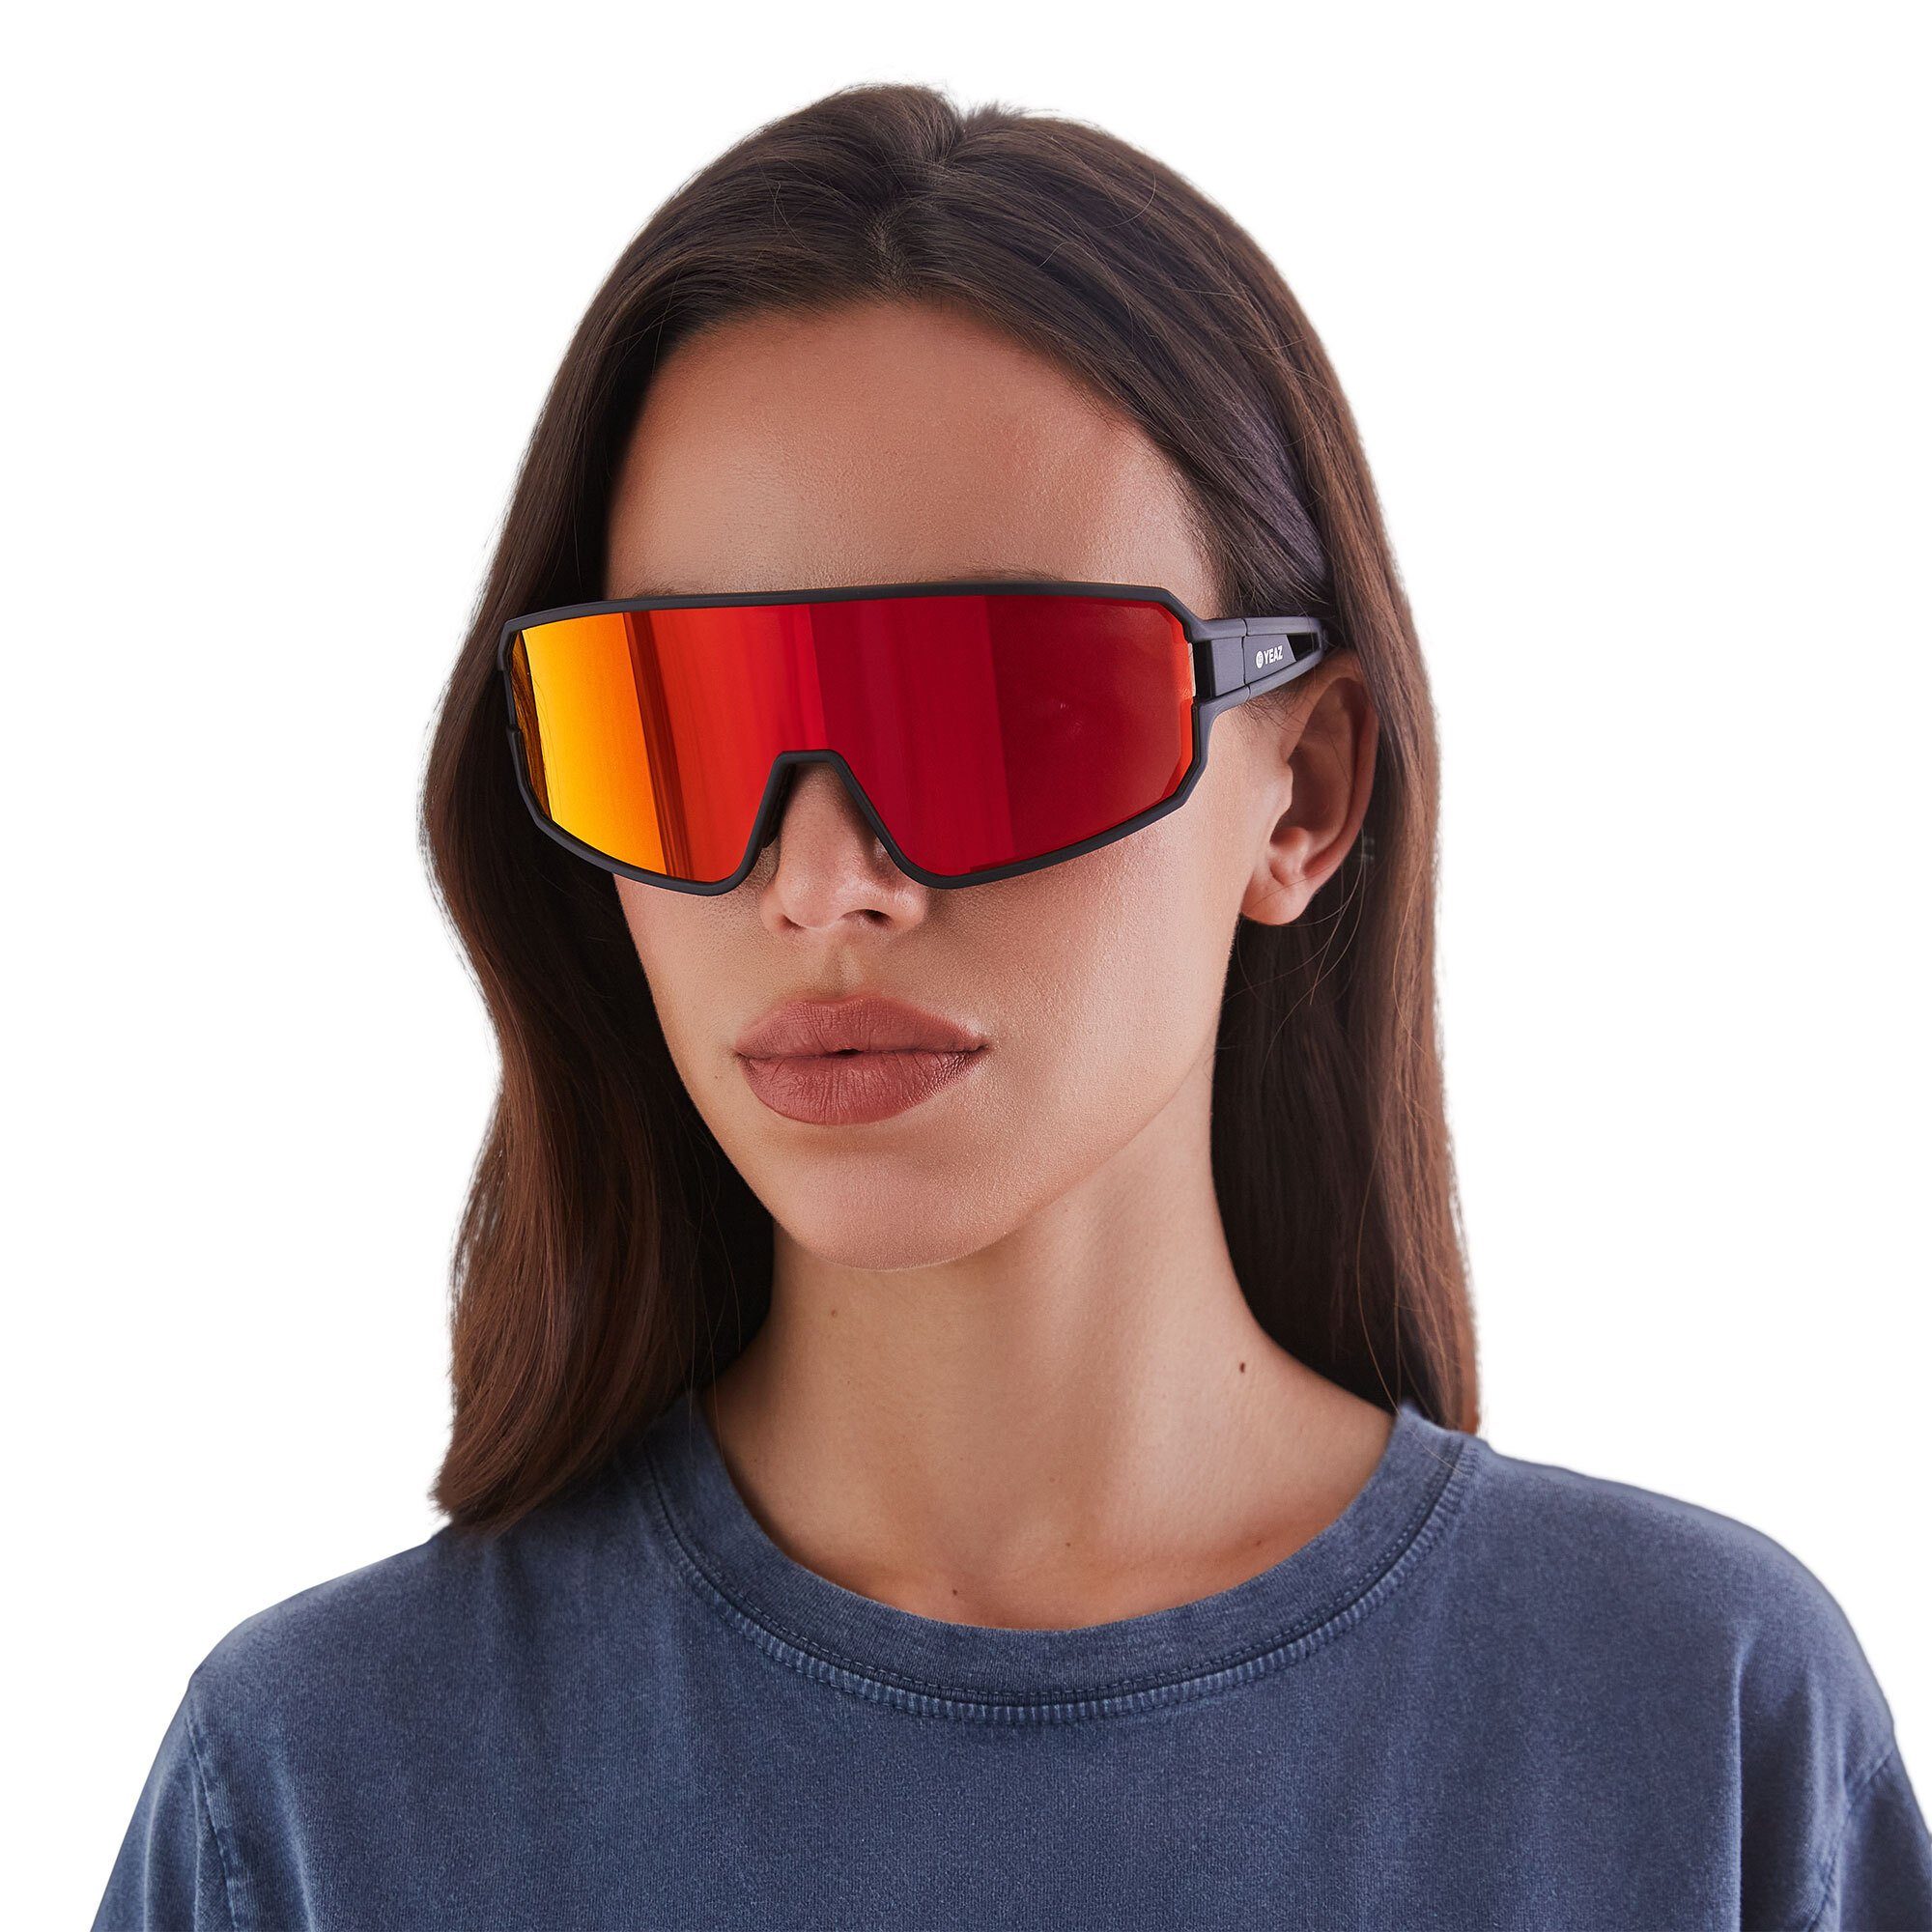 black/red, optimierter Schutz Sportbrille Guter YEAZ sport-sonnenbrille Sicht SUNWAVE bei